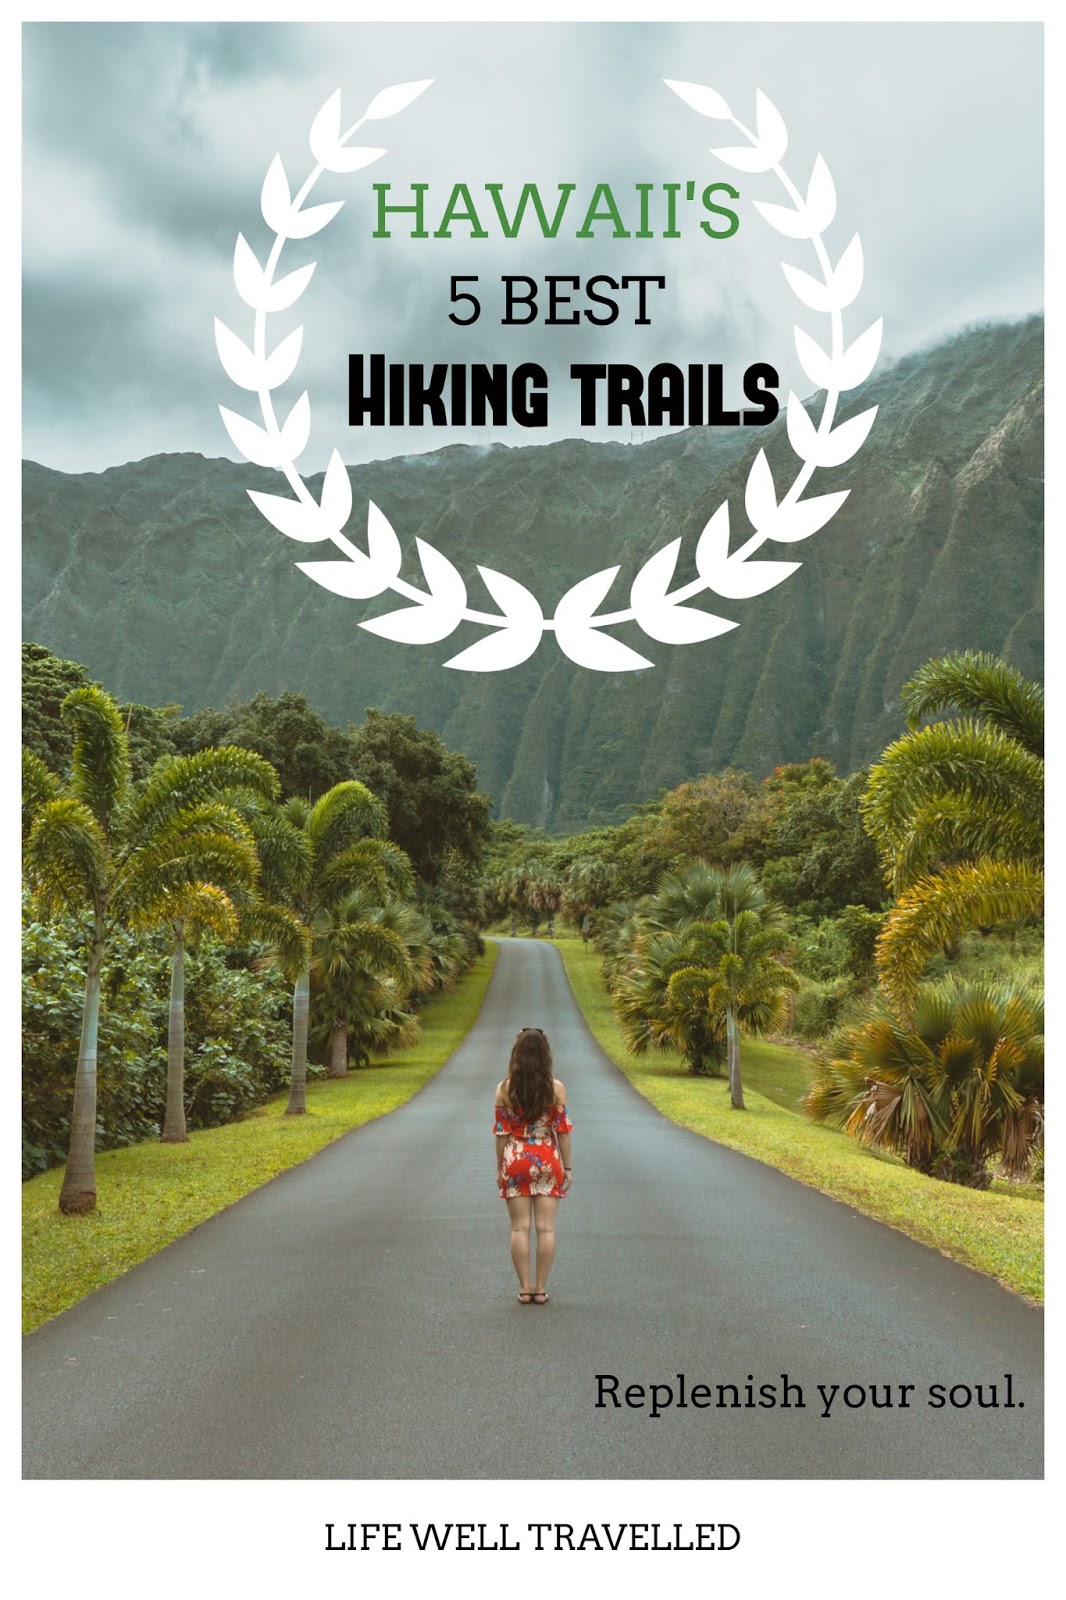 Hawaii’s 5 Best Walking Trails